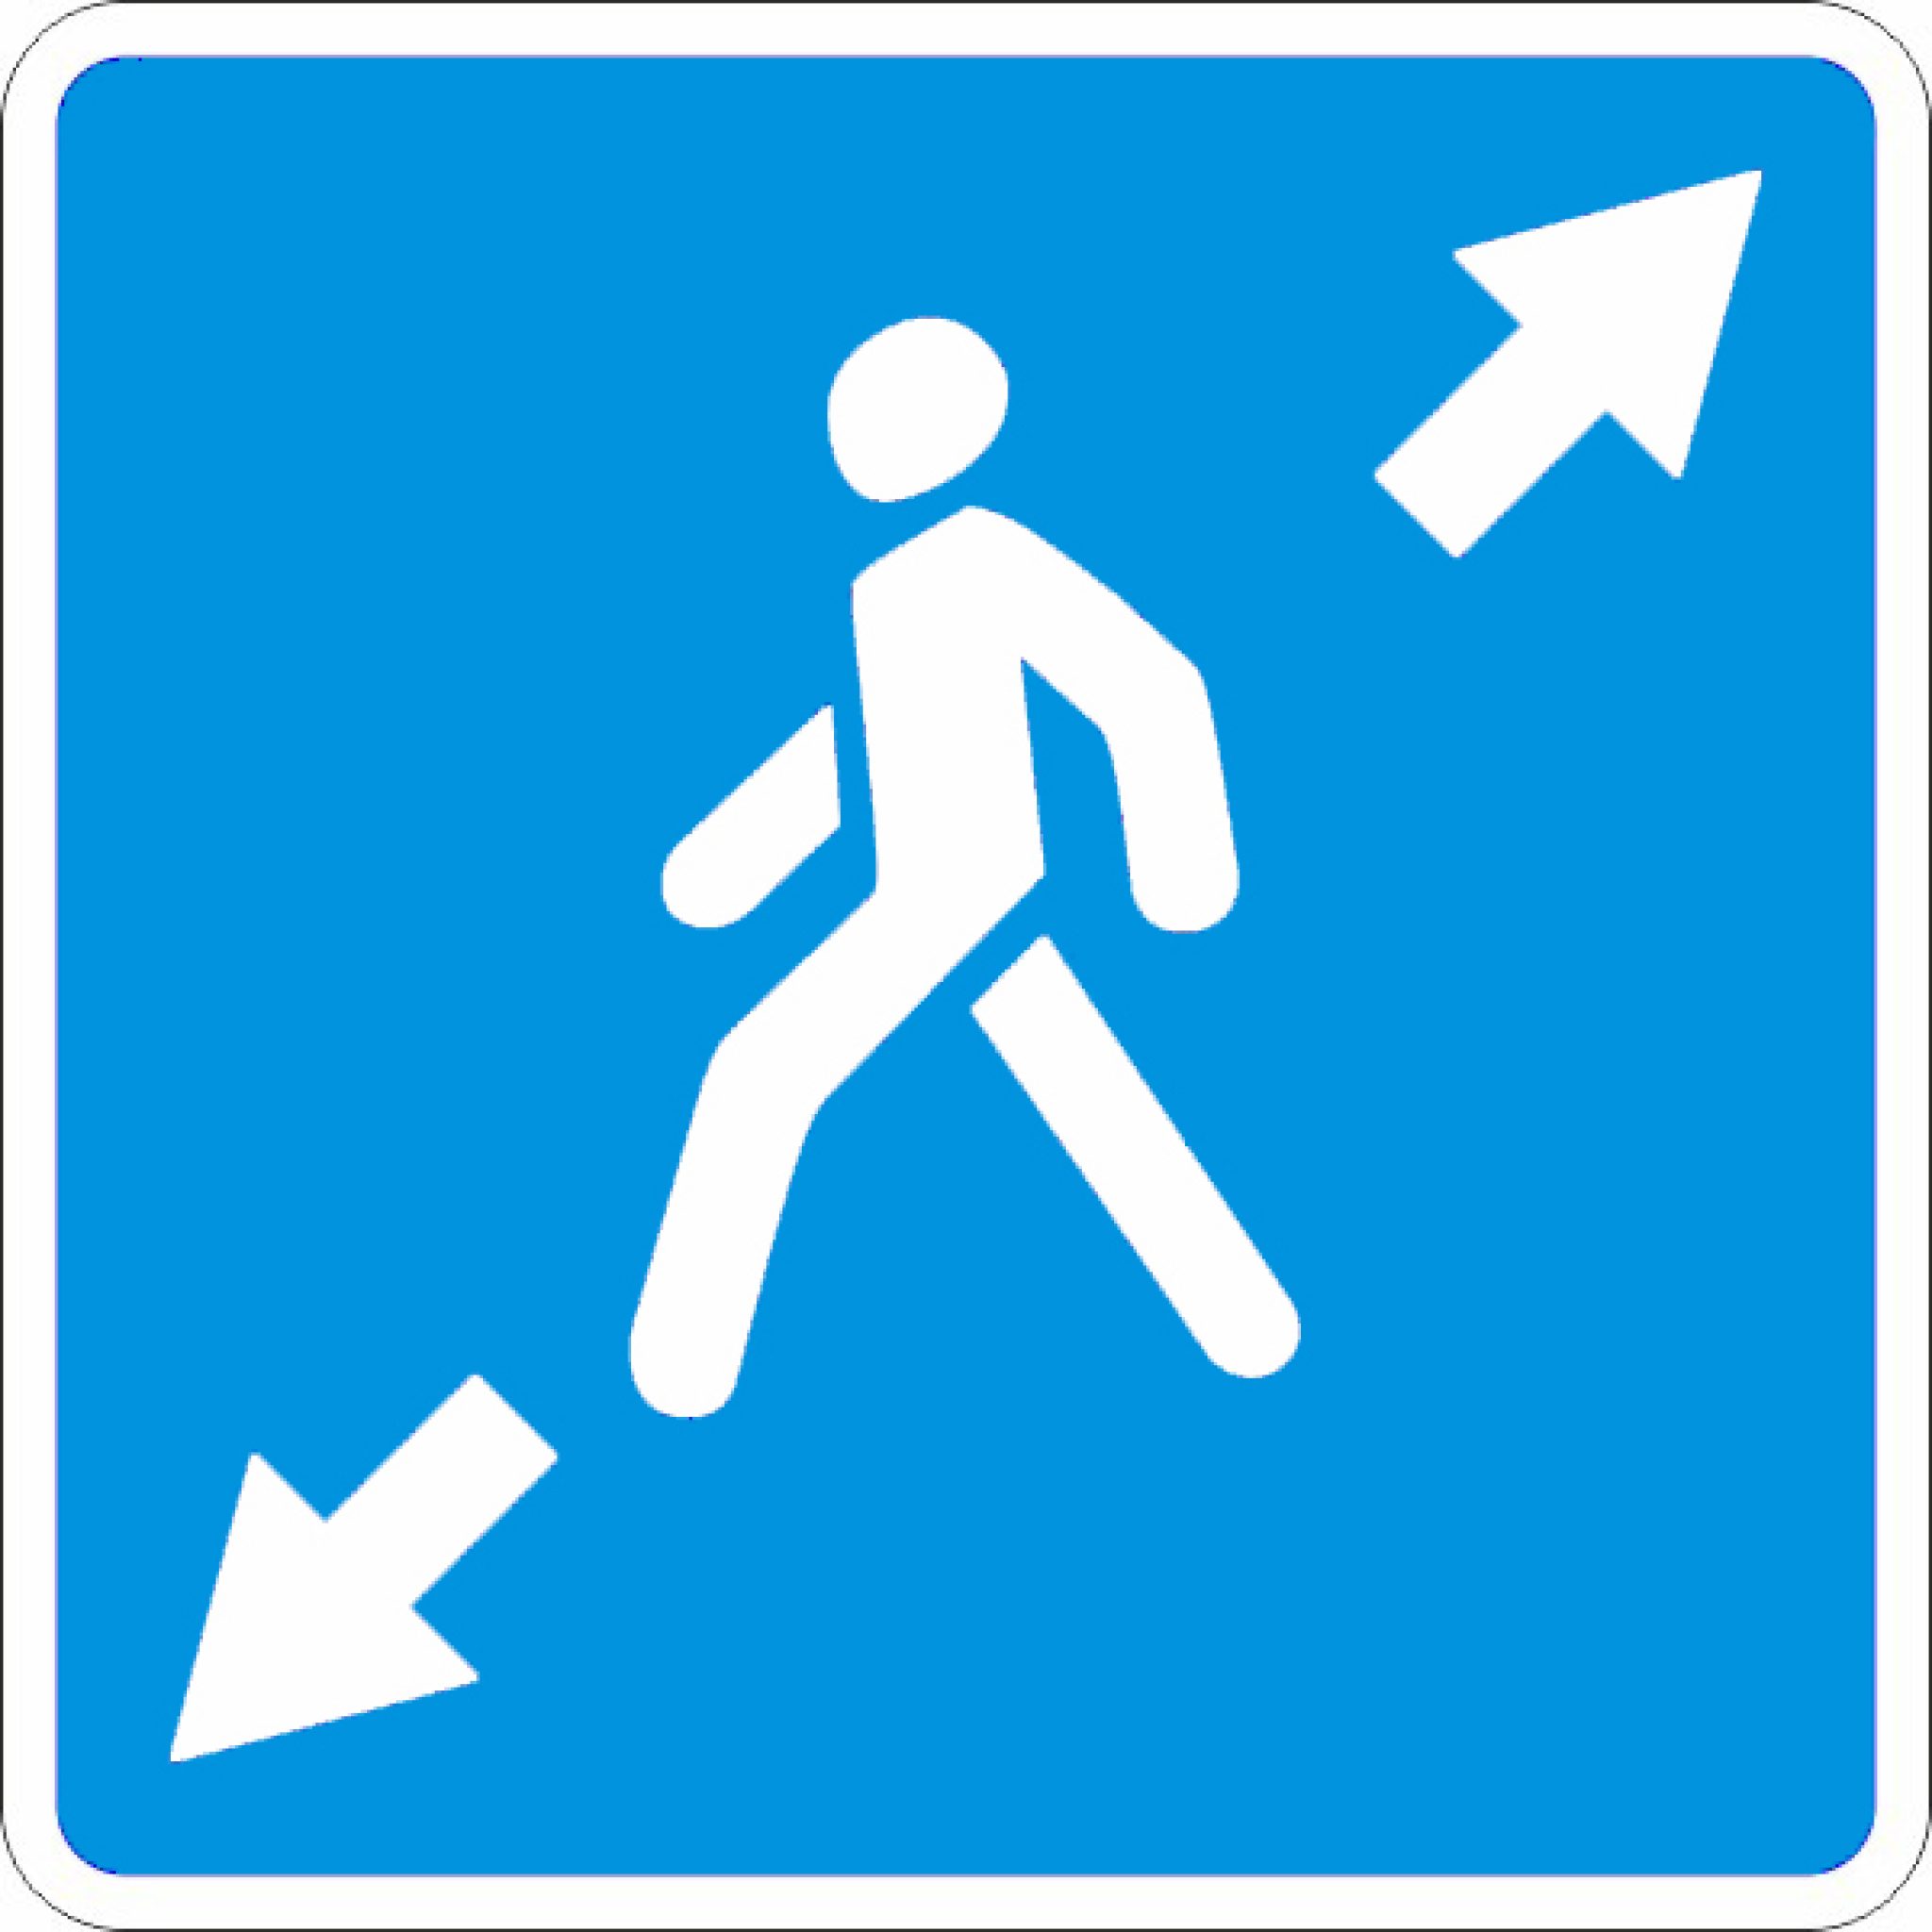 знаки которые помогают пешеходам картинки дорожного движения